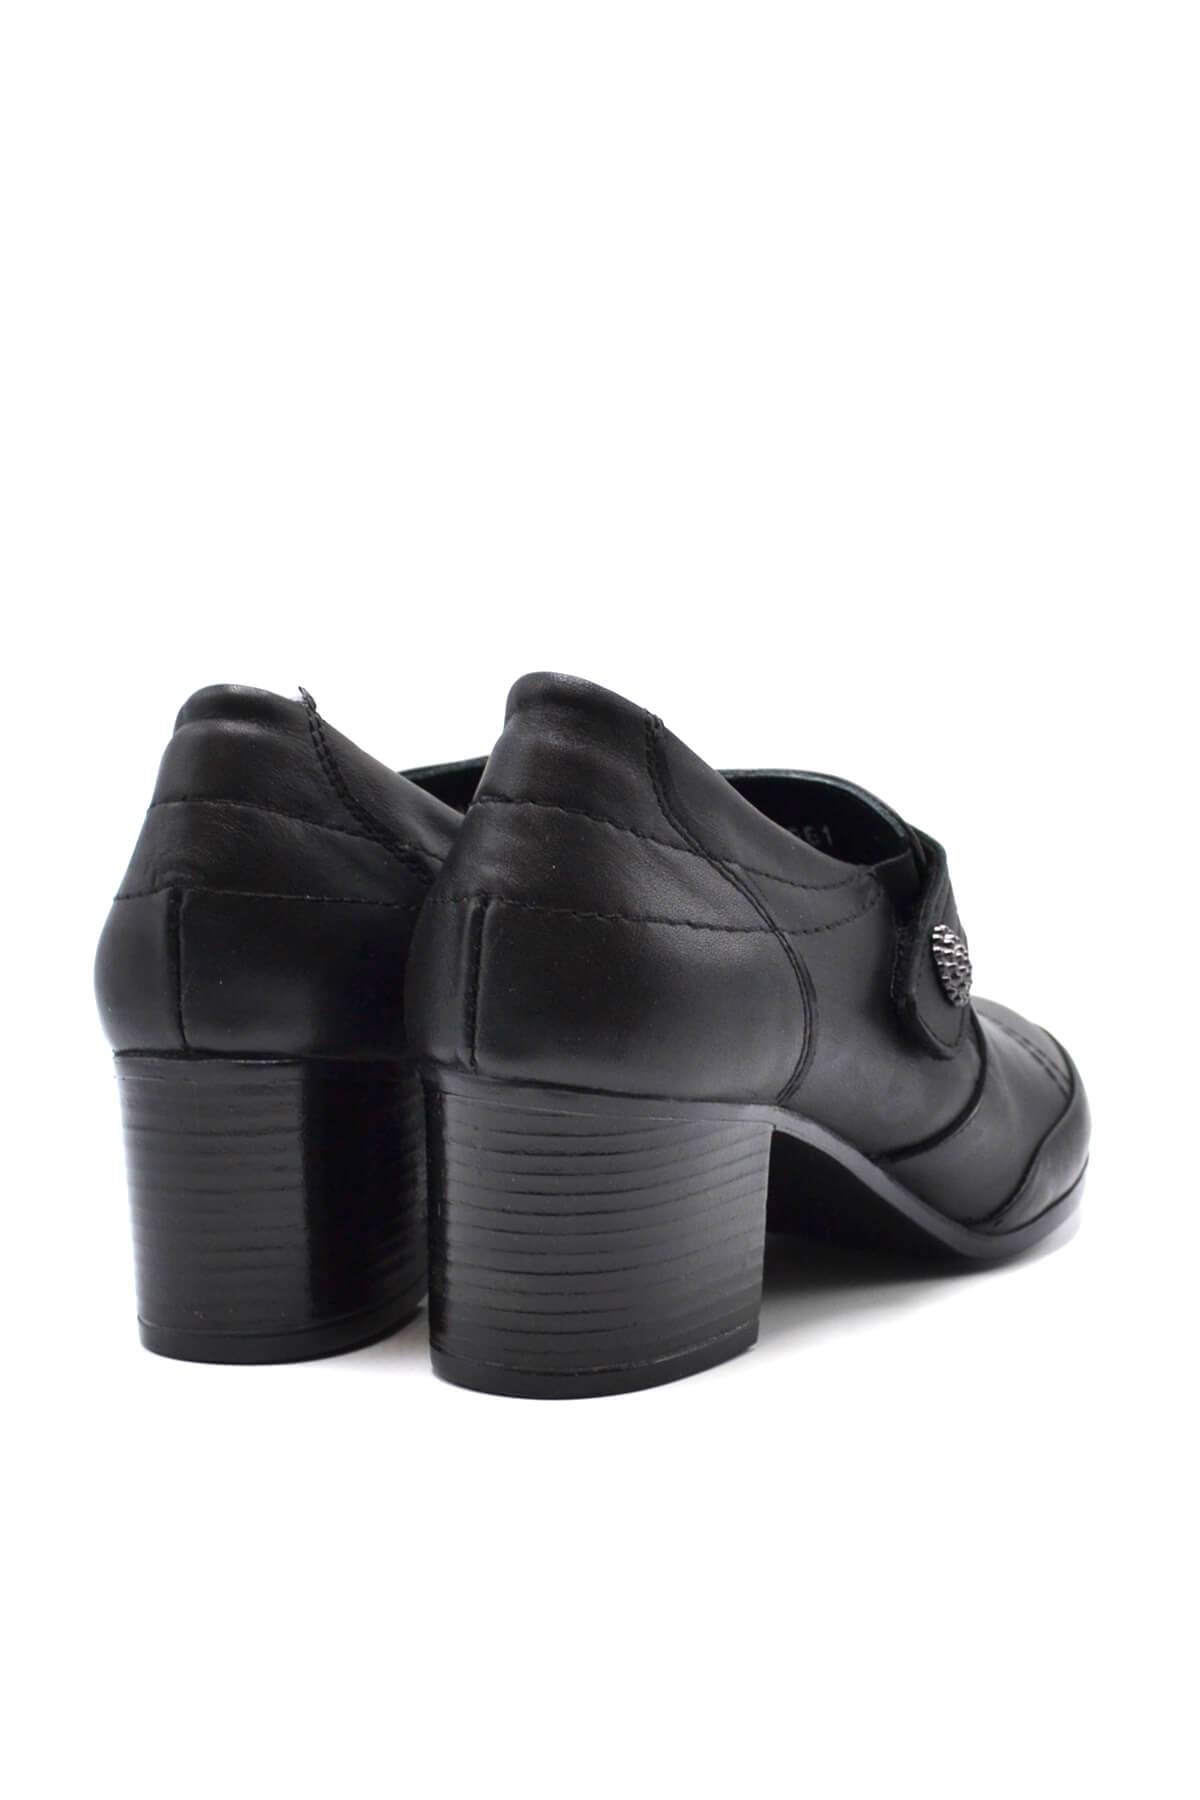 Kadın Topuklu Ayakkabı Siyah 1911961K